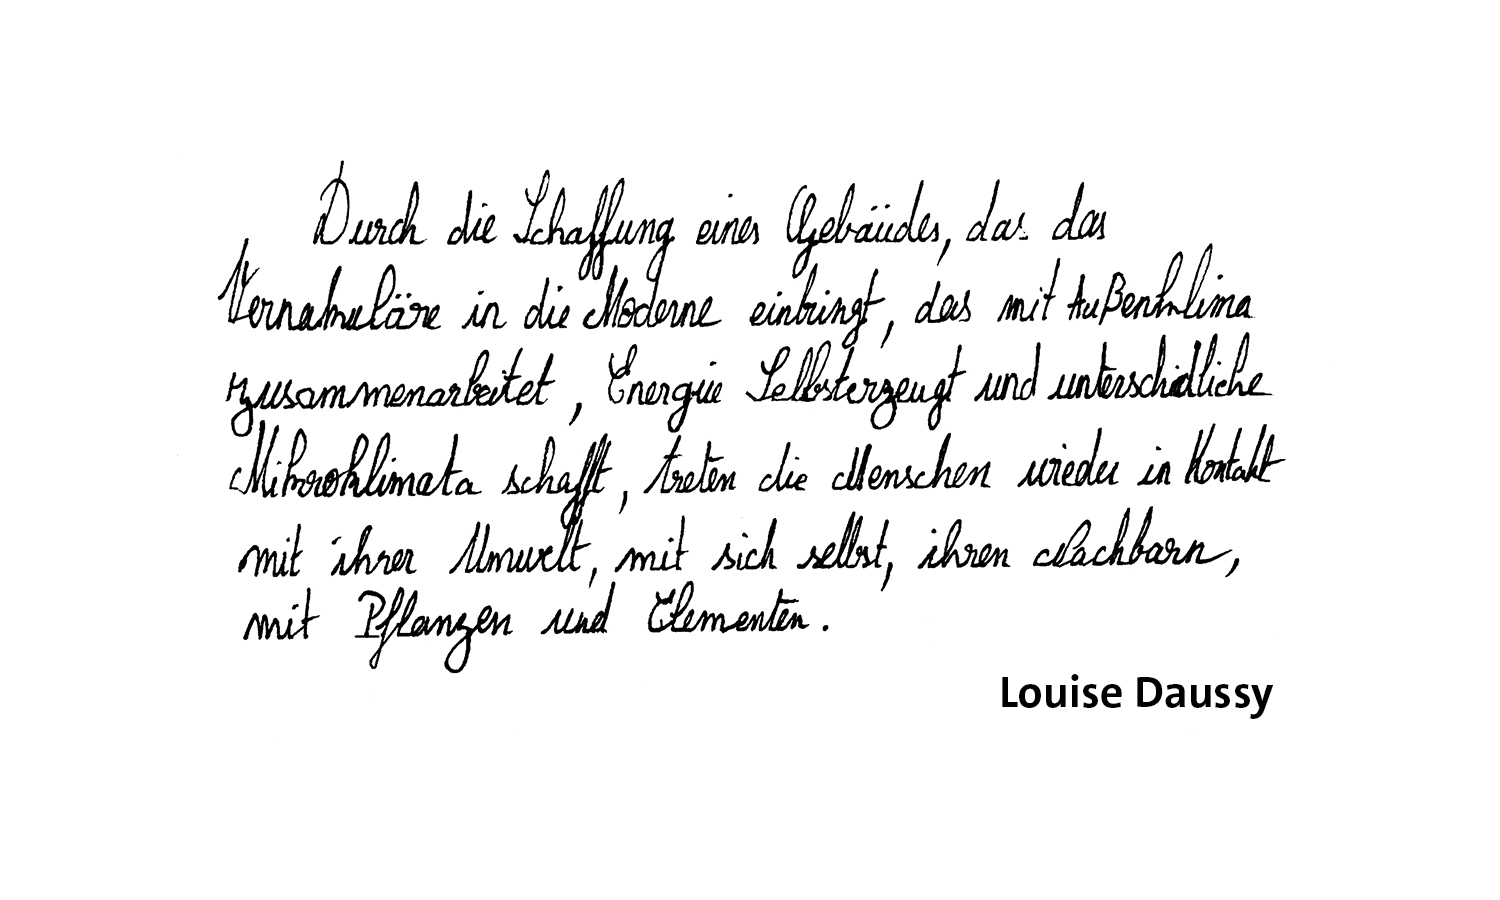 Louise Daussy